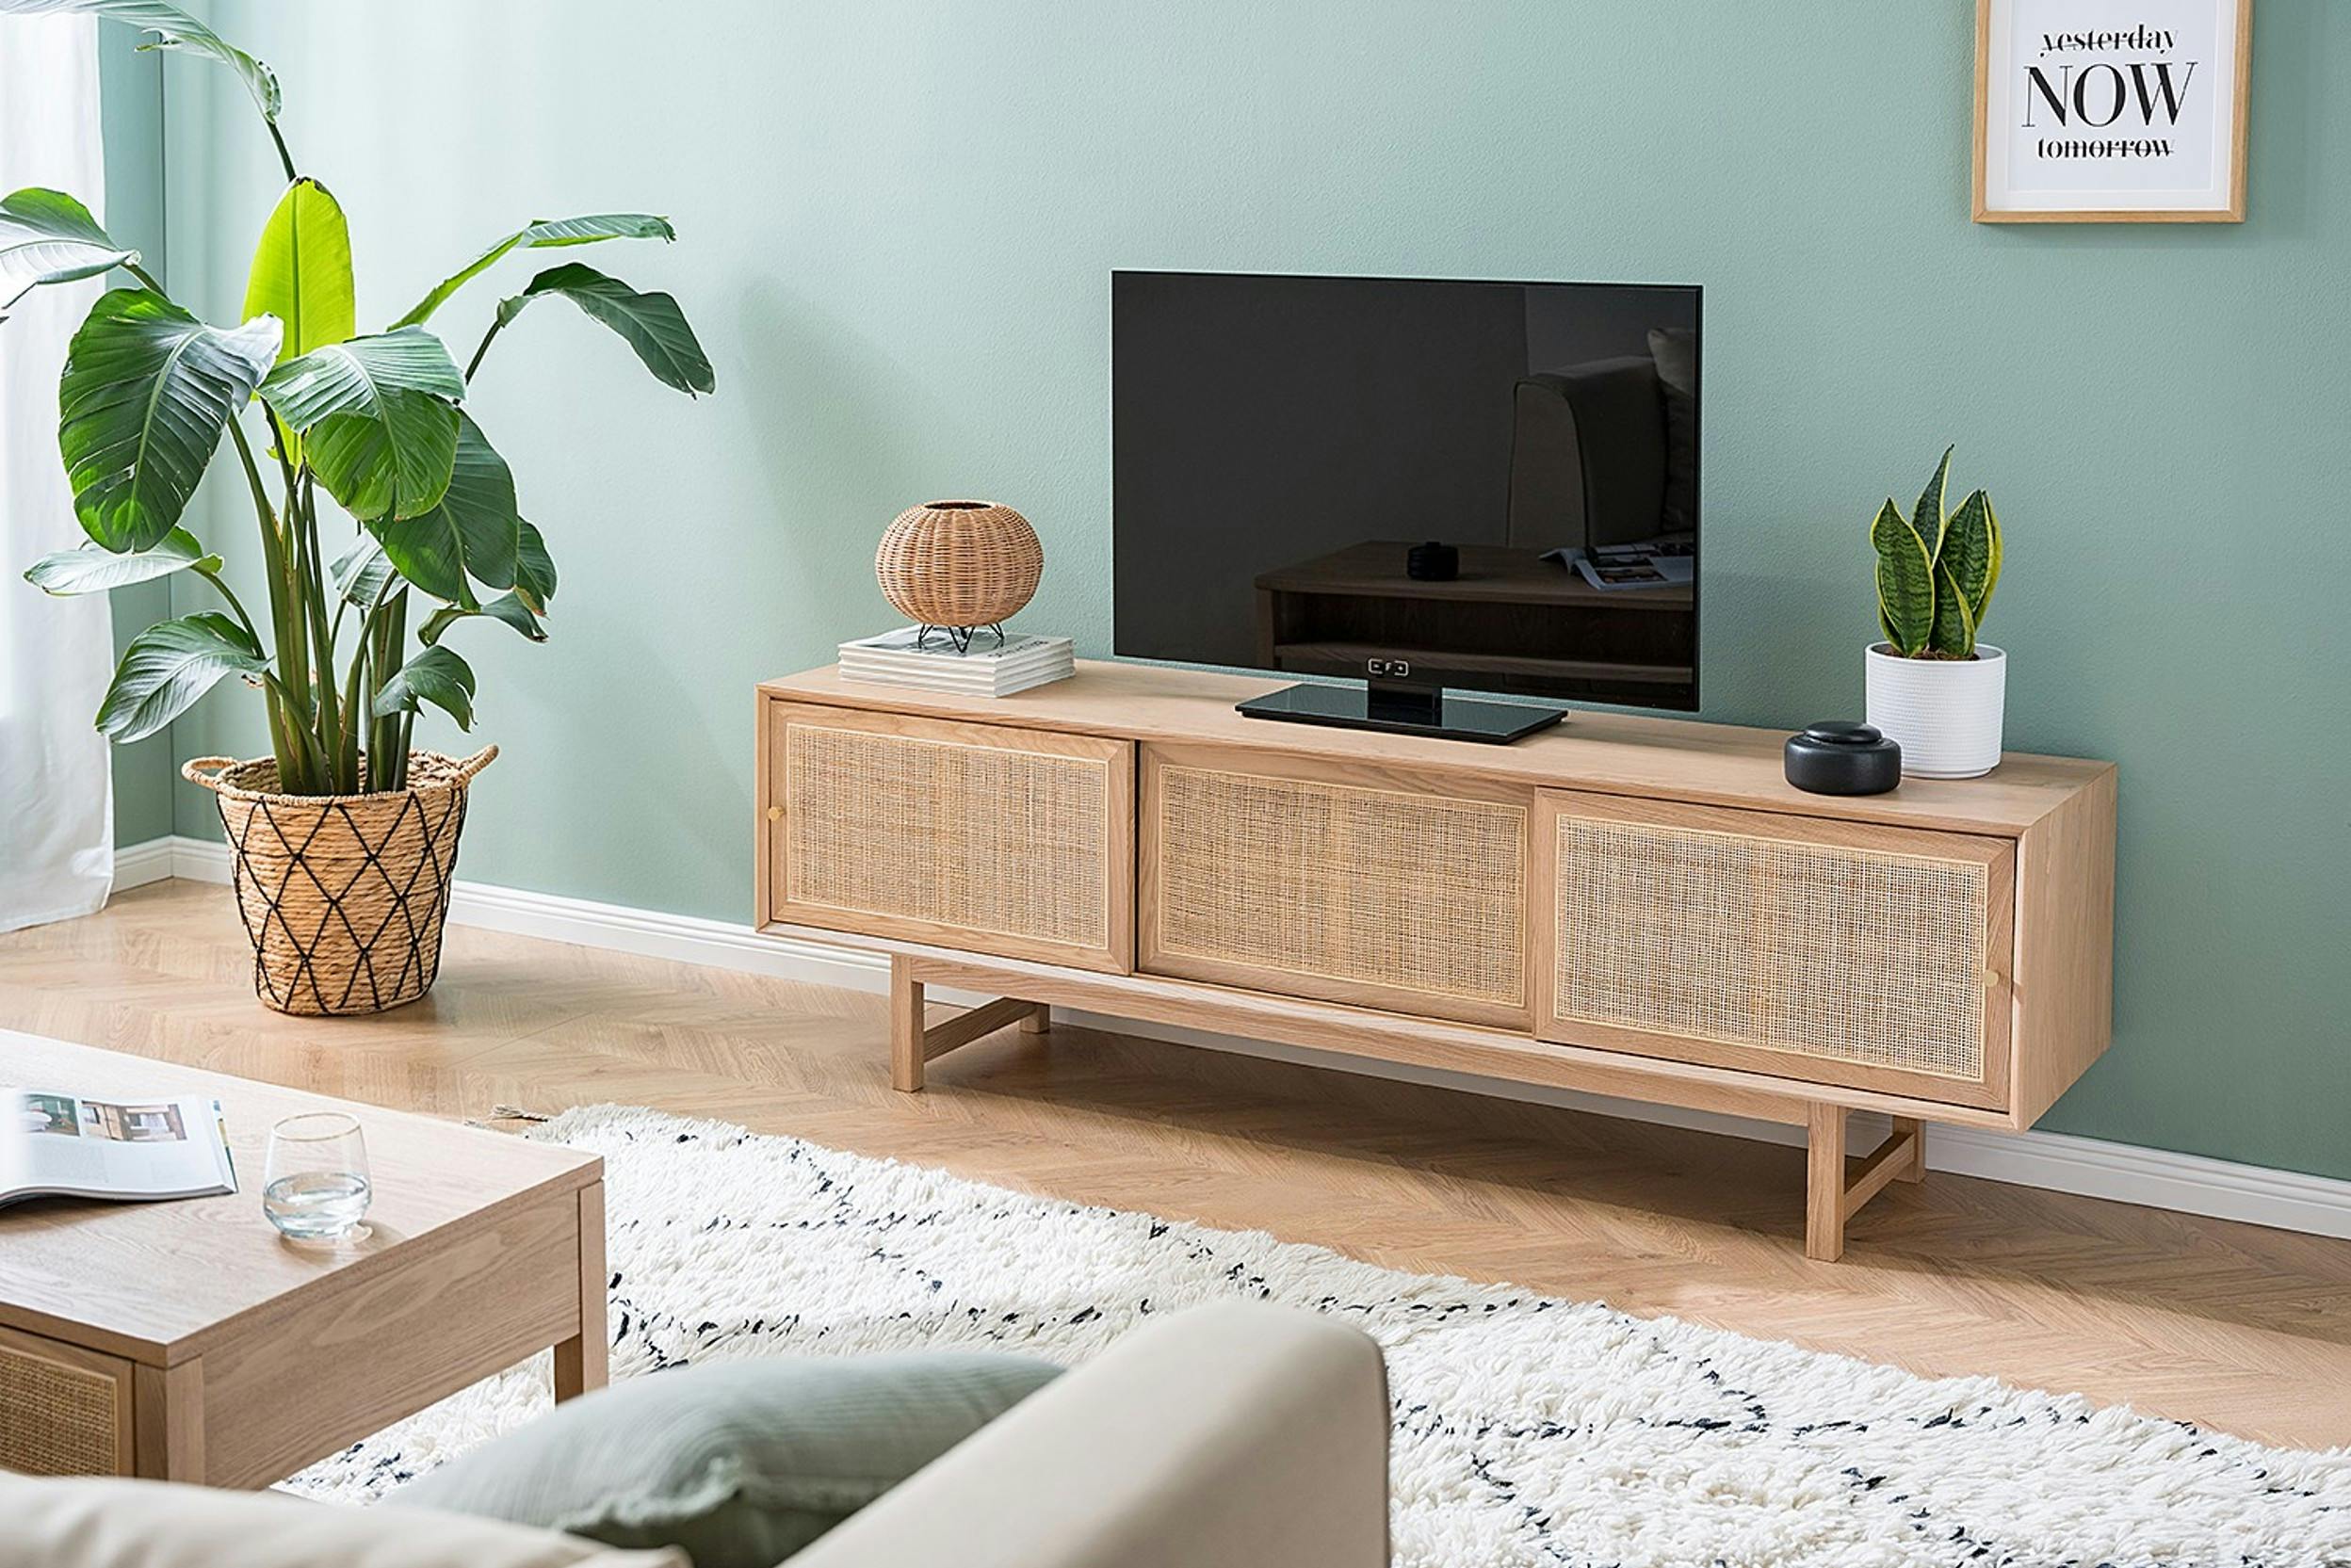 Rattan-Sideboard vor grüner Wand mit Fernseher, Zimmerpflanzen und Tischlampe